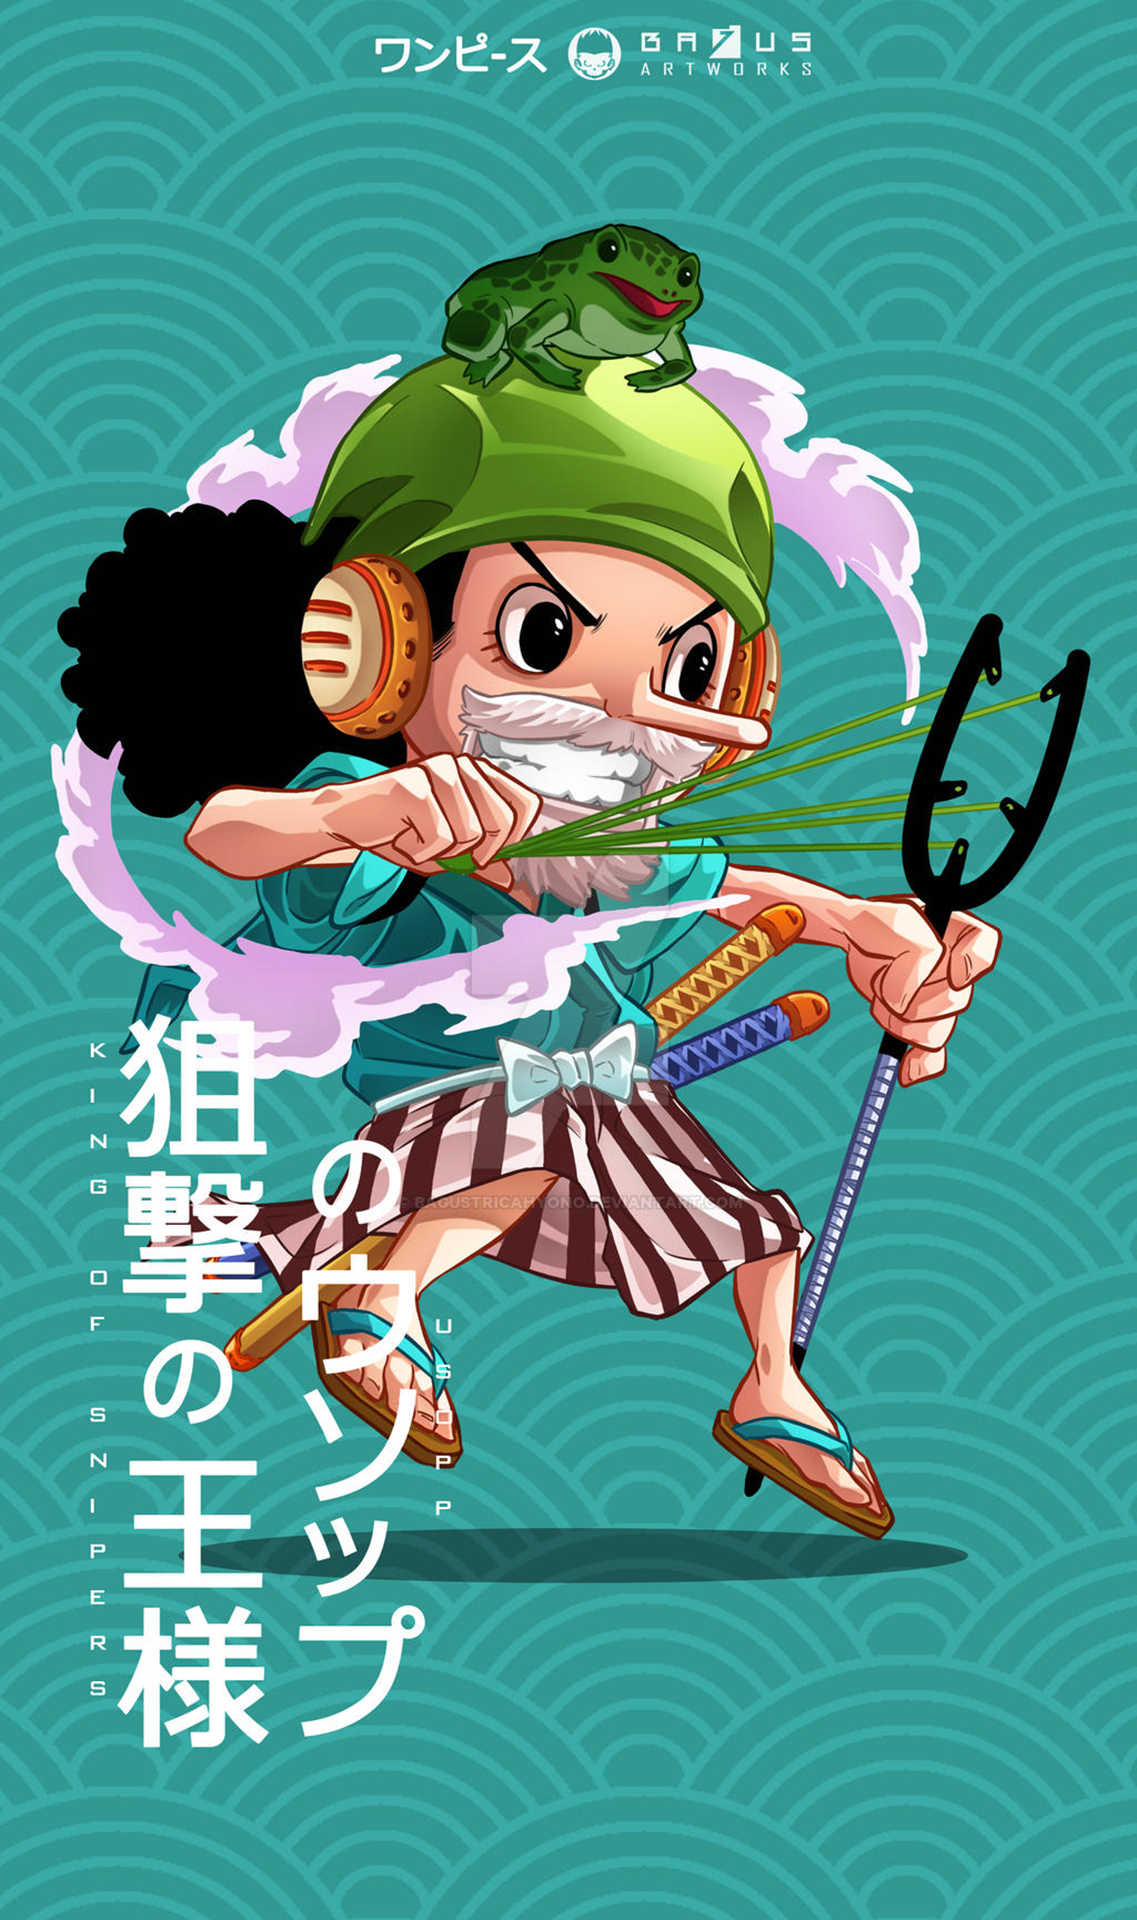 Hình nền  hình minh họa Anime hoạt hình Một mảnh Sanji Monkey D  Luffy Truyện tranh Roronoa Zoro Nami Tony Tony Chopper Nico Robin  Brook Usopp Mũ rơm Cướp biển Mũ